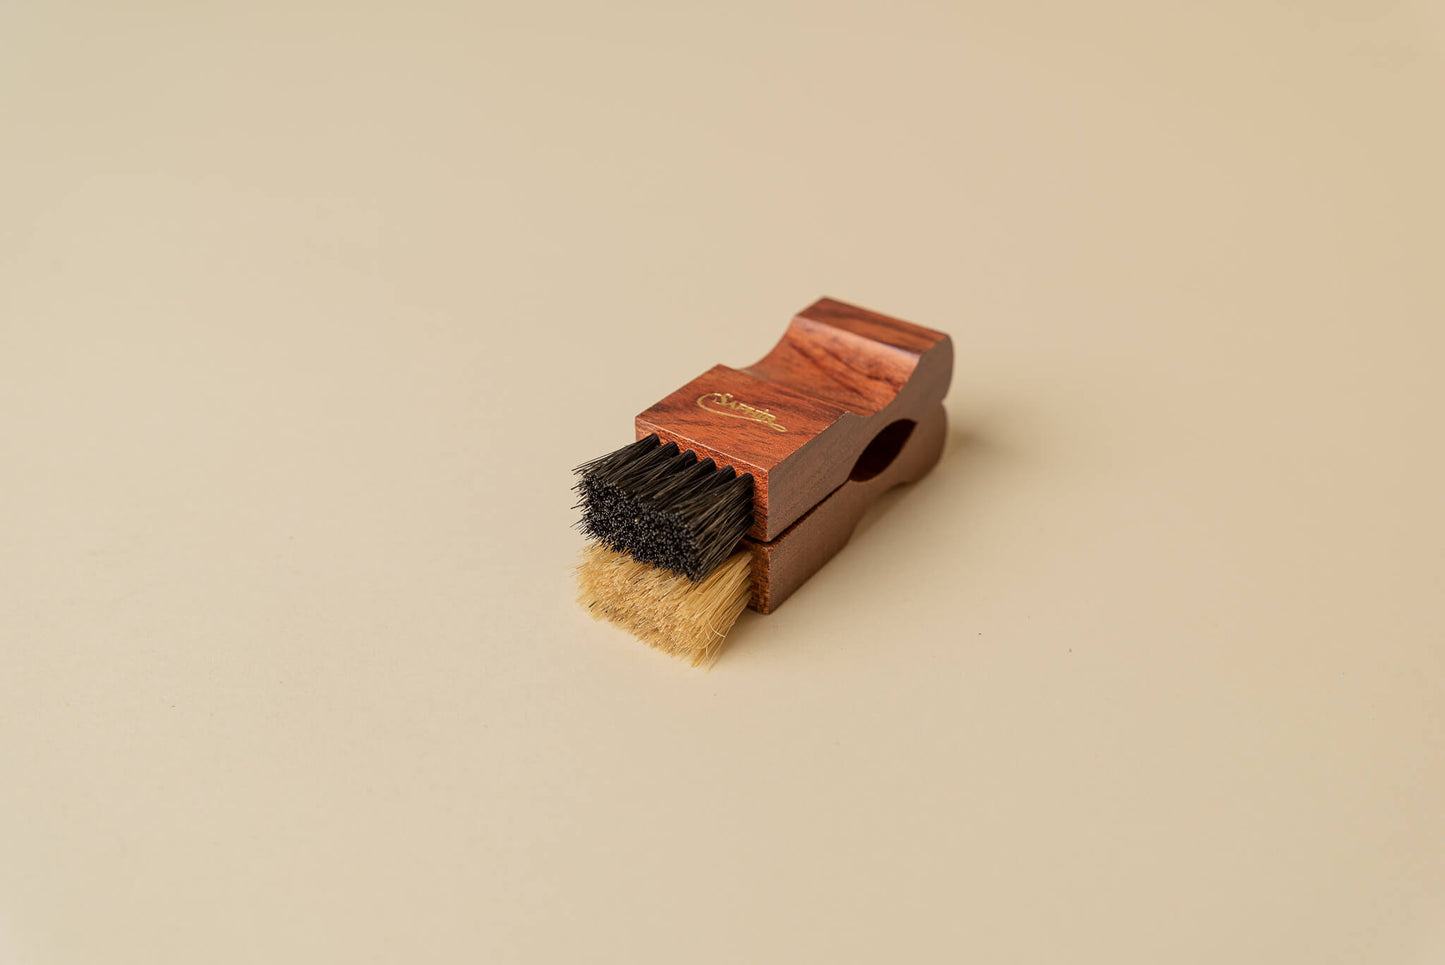 Saphir Medaille d'Or 1925 Wood Small Dauber Applicator Horse Hair Brush 3.5" - Brillare